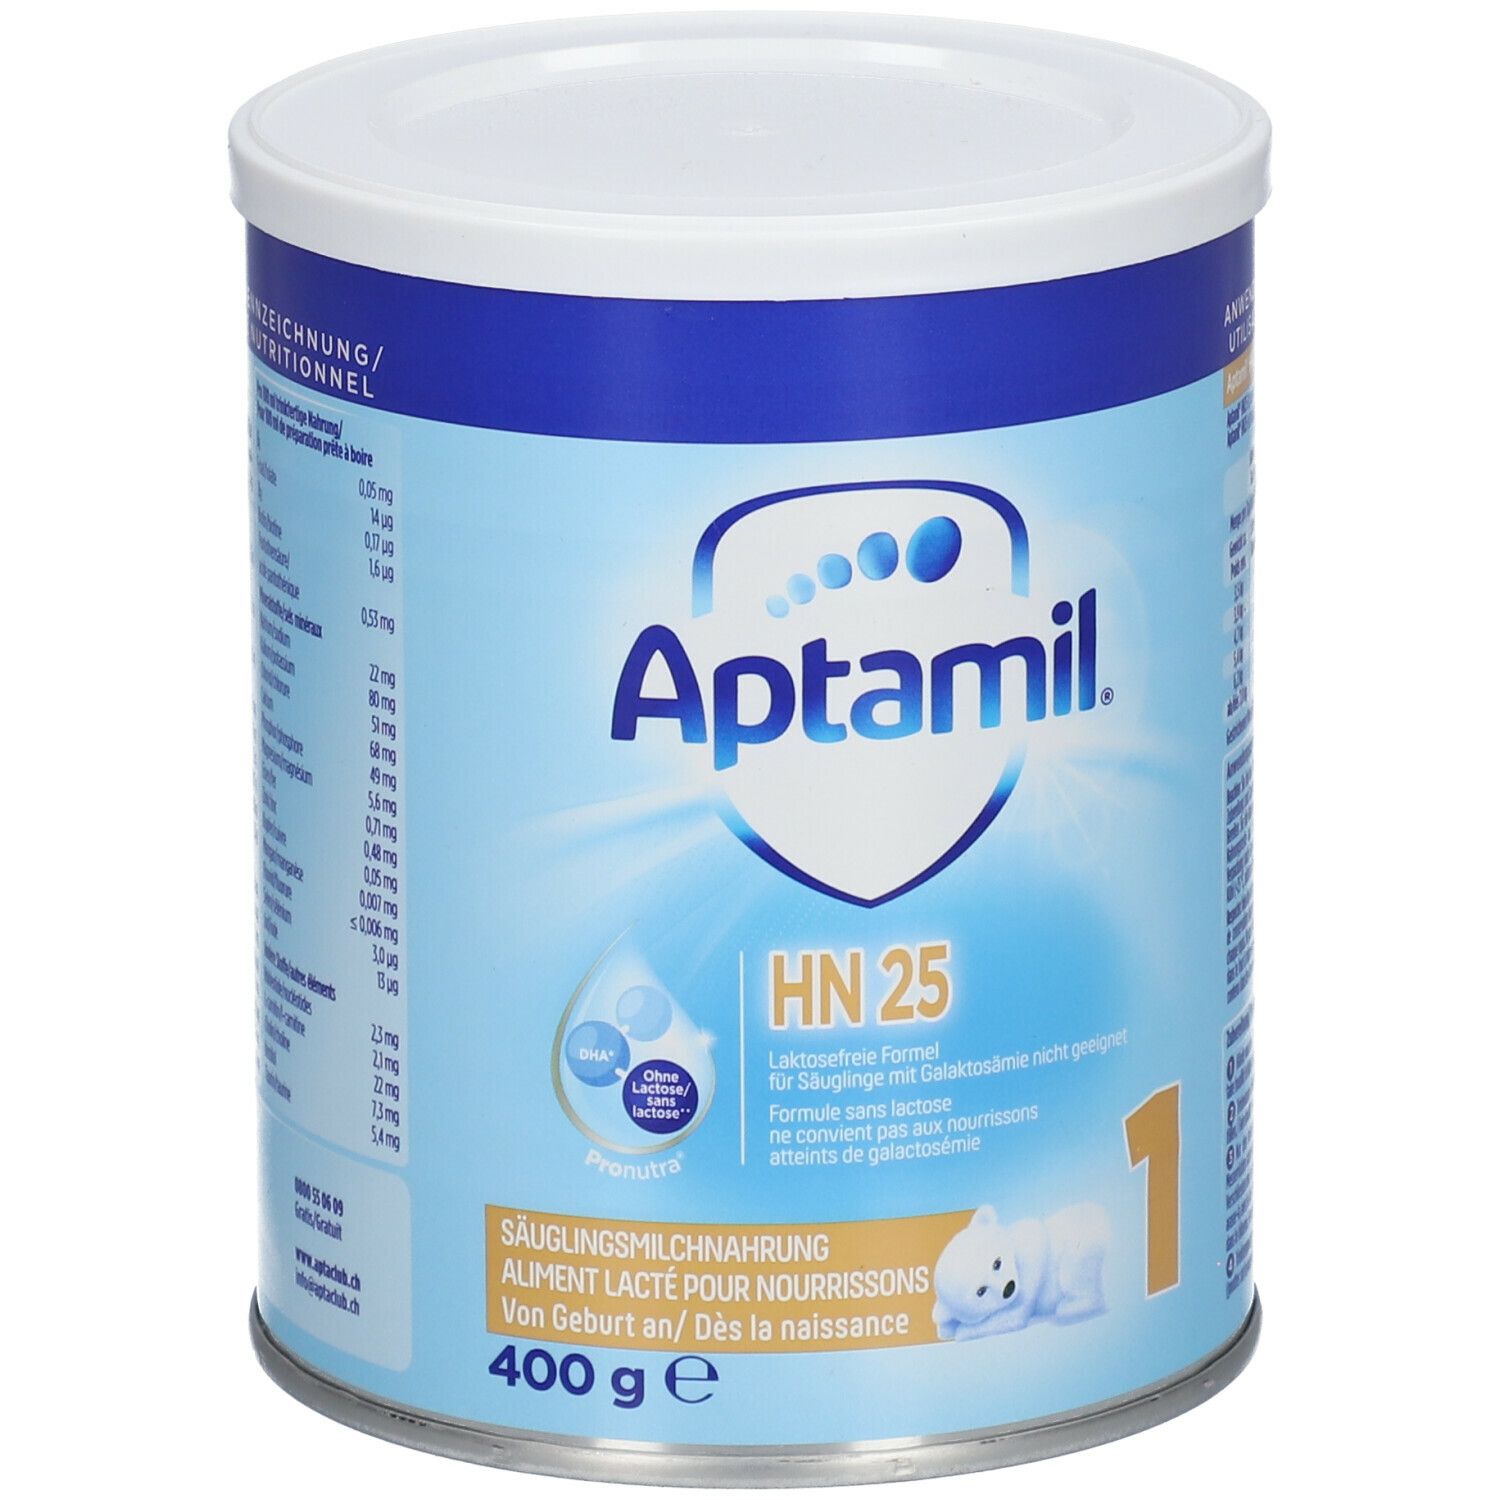 Aptamil® HN 25 1